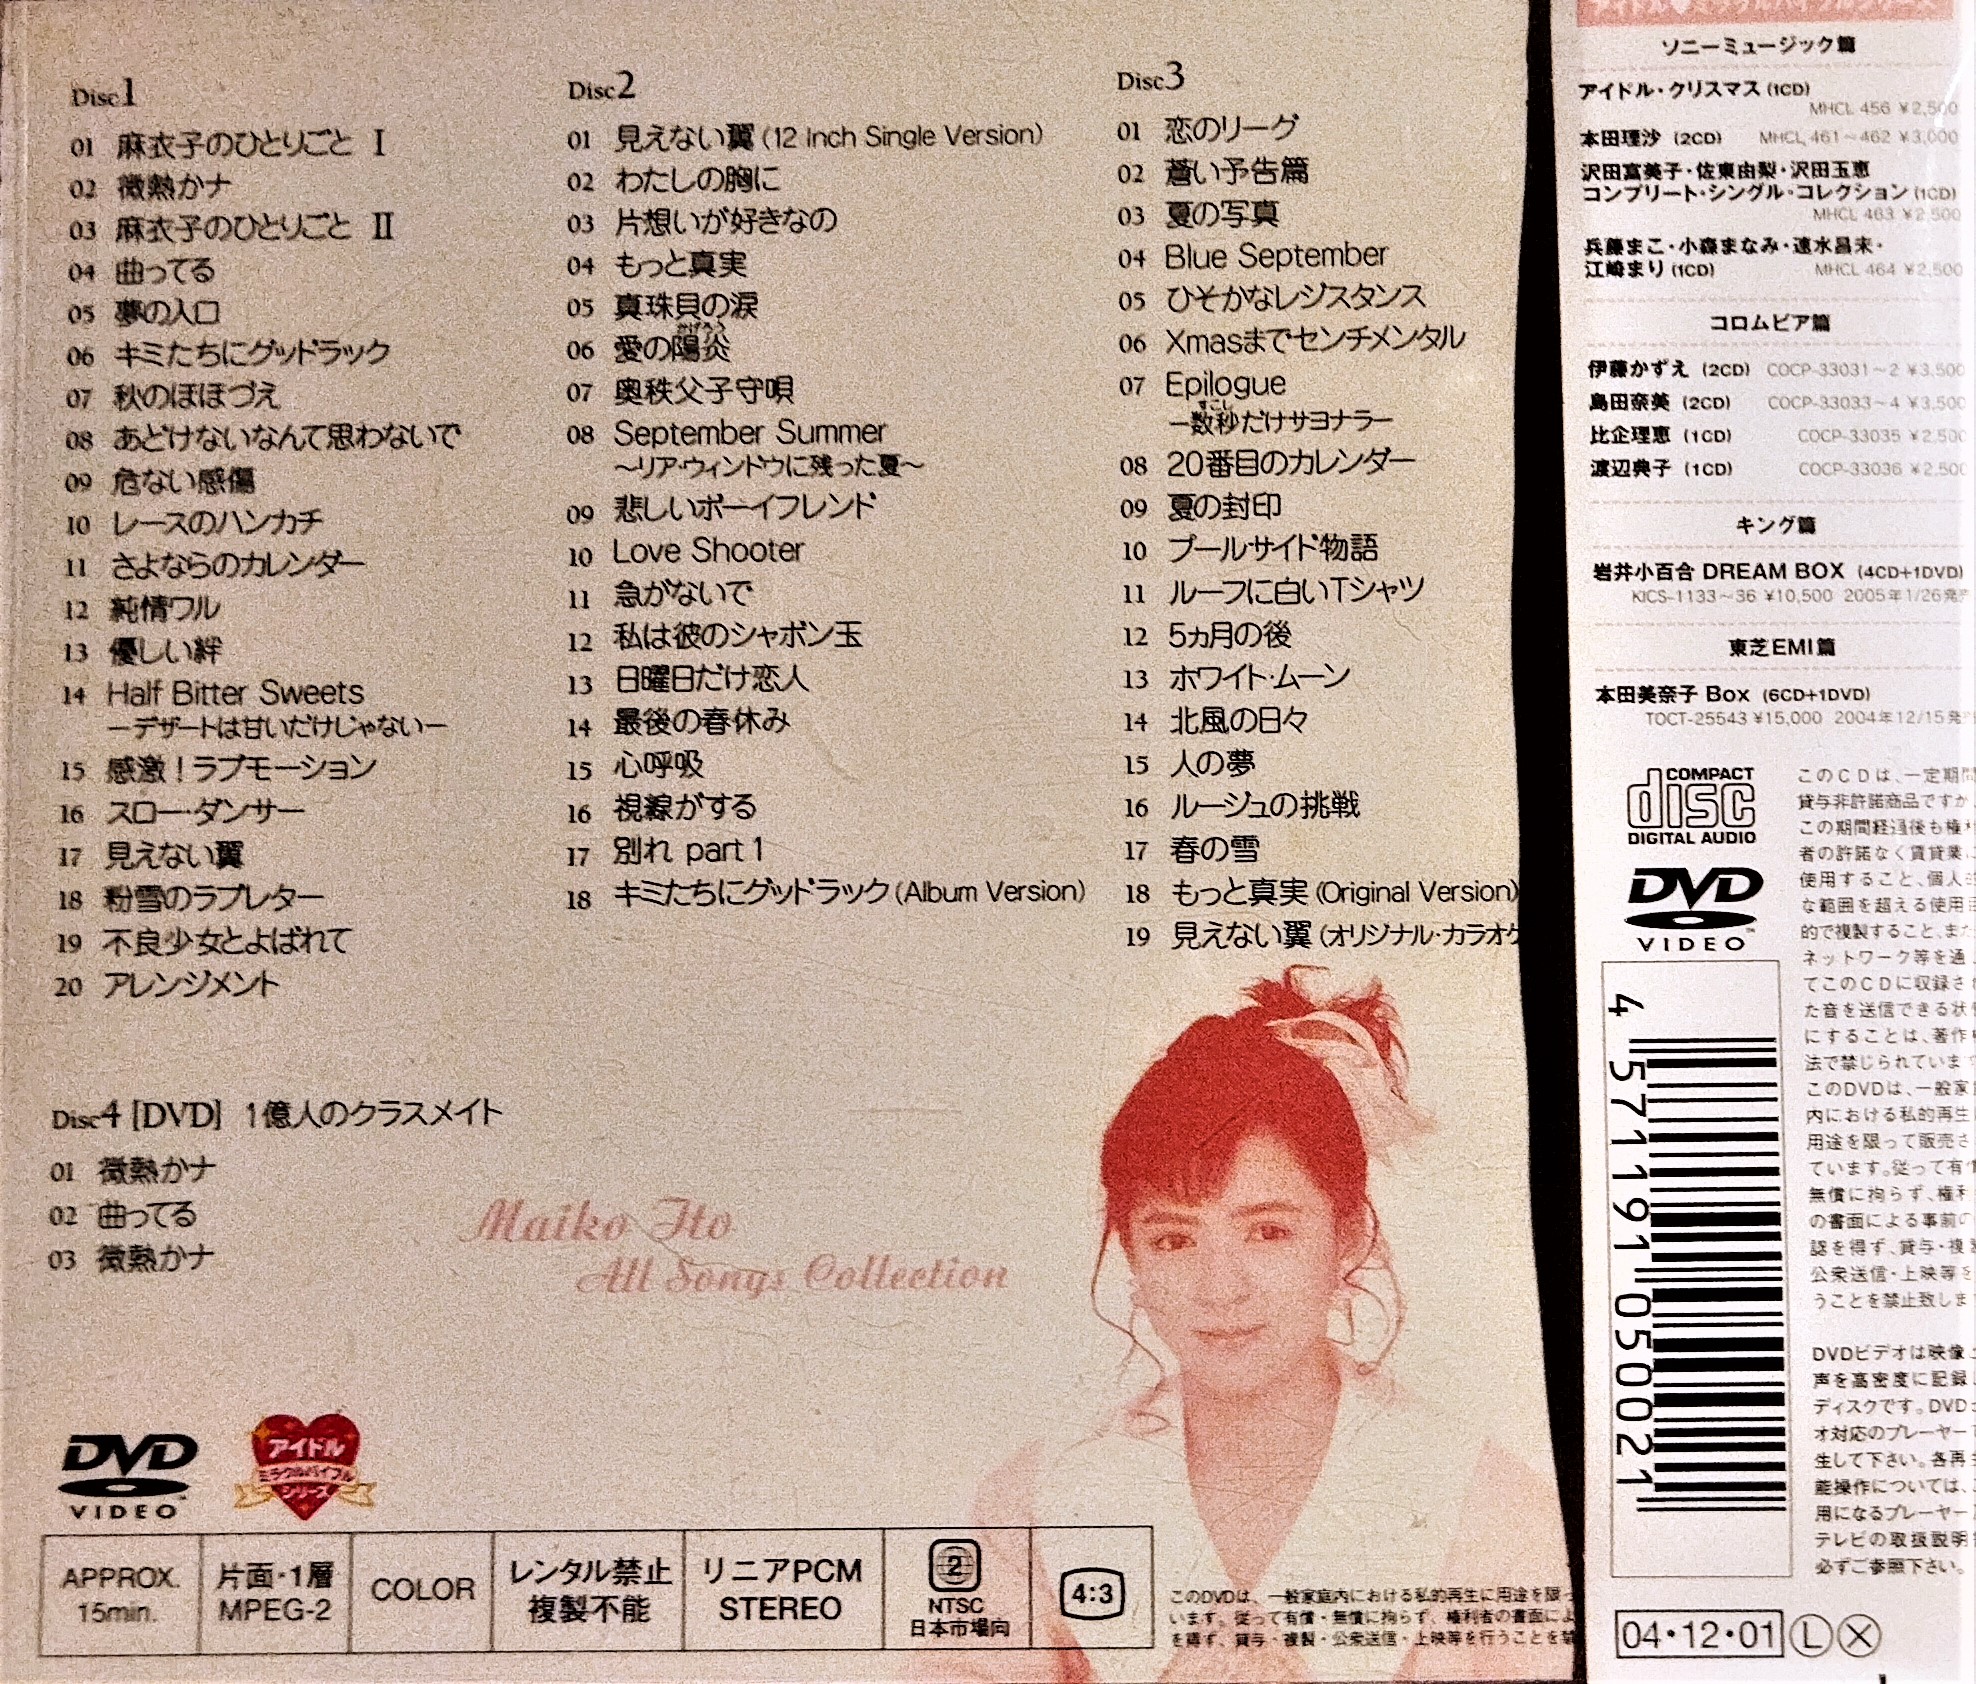 伊藤麻衣子 - アイドル・ミラクルバイブルシリーズ 伊藤麻衣子オール・ソングス・コレクション - 3CD+DVD